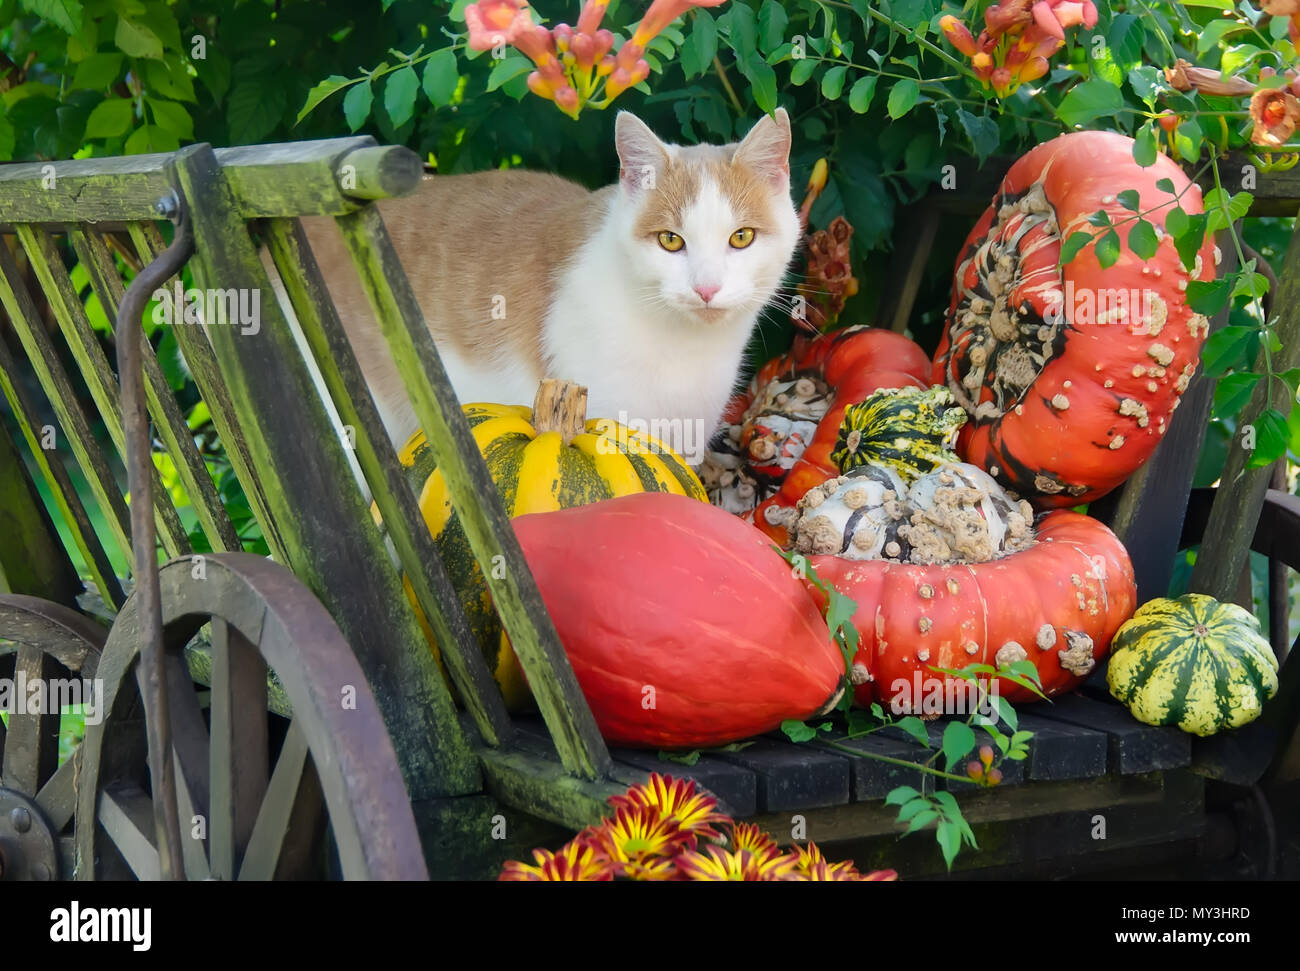 Red-White bicolor cat, European Shorthair, ponendo in mezzo pumkins colorati in un vecchio carrello di legno su una giornata autunnale Foto Stock